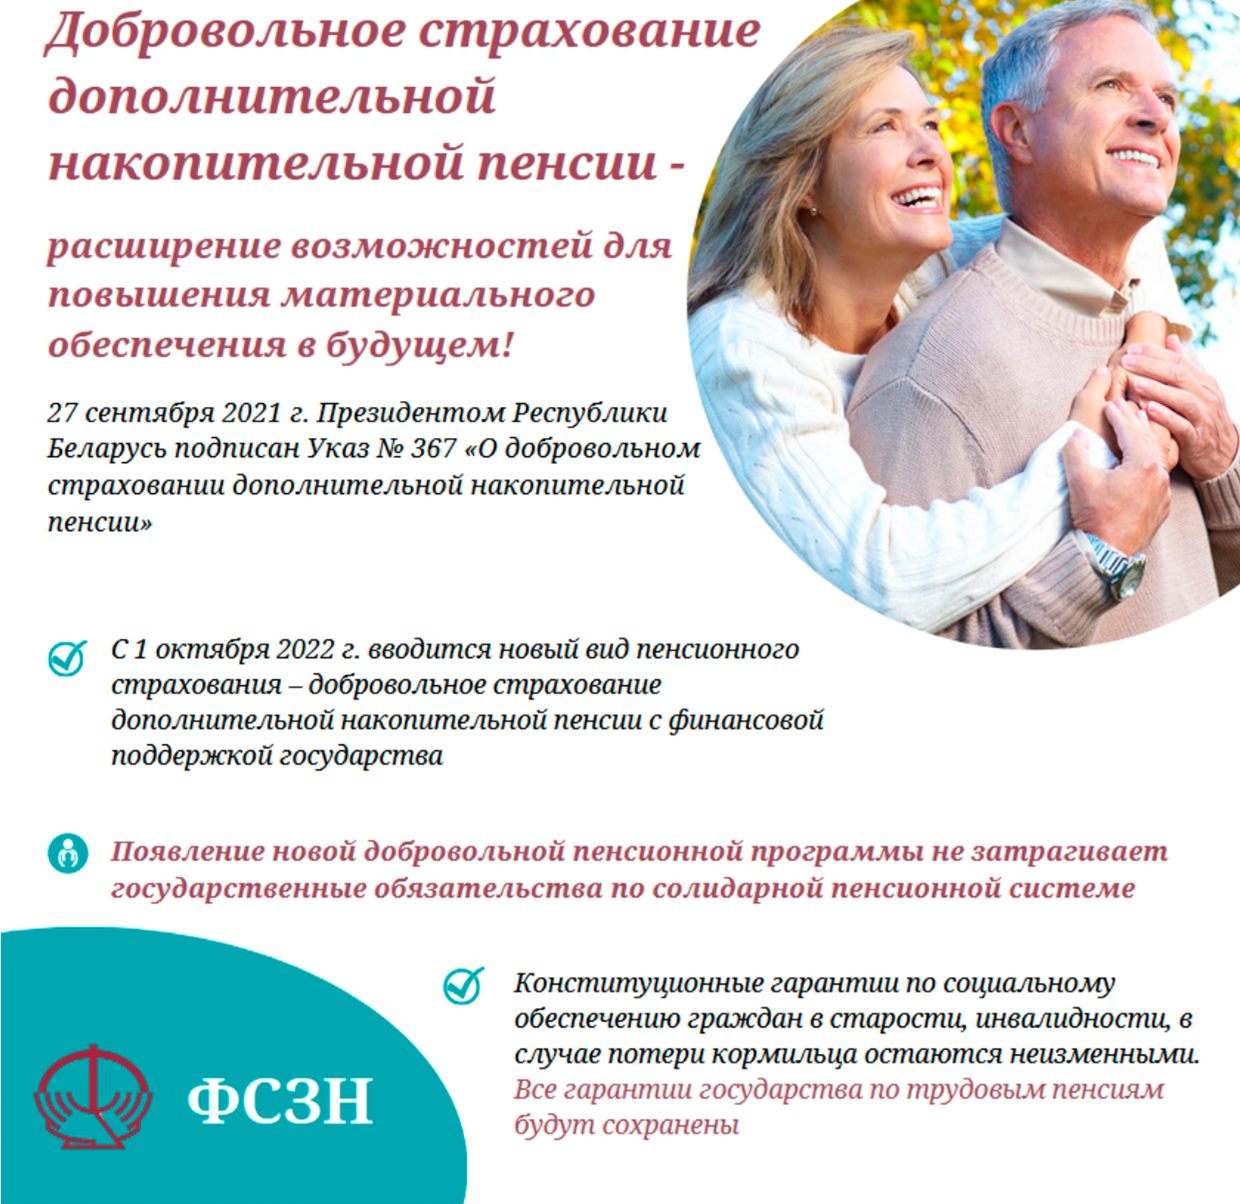 Накопительное пенсионное страхование. Добровольное страхование. Дополнительное страхование. Дополнительное страхование пенсии в Беларуси. Пенсионное страхование условия